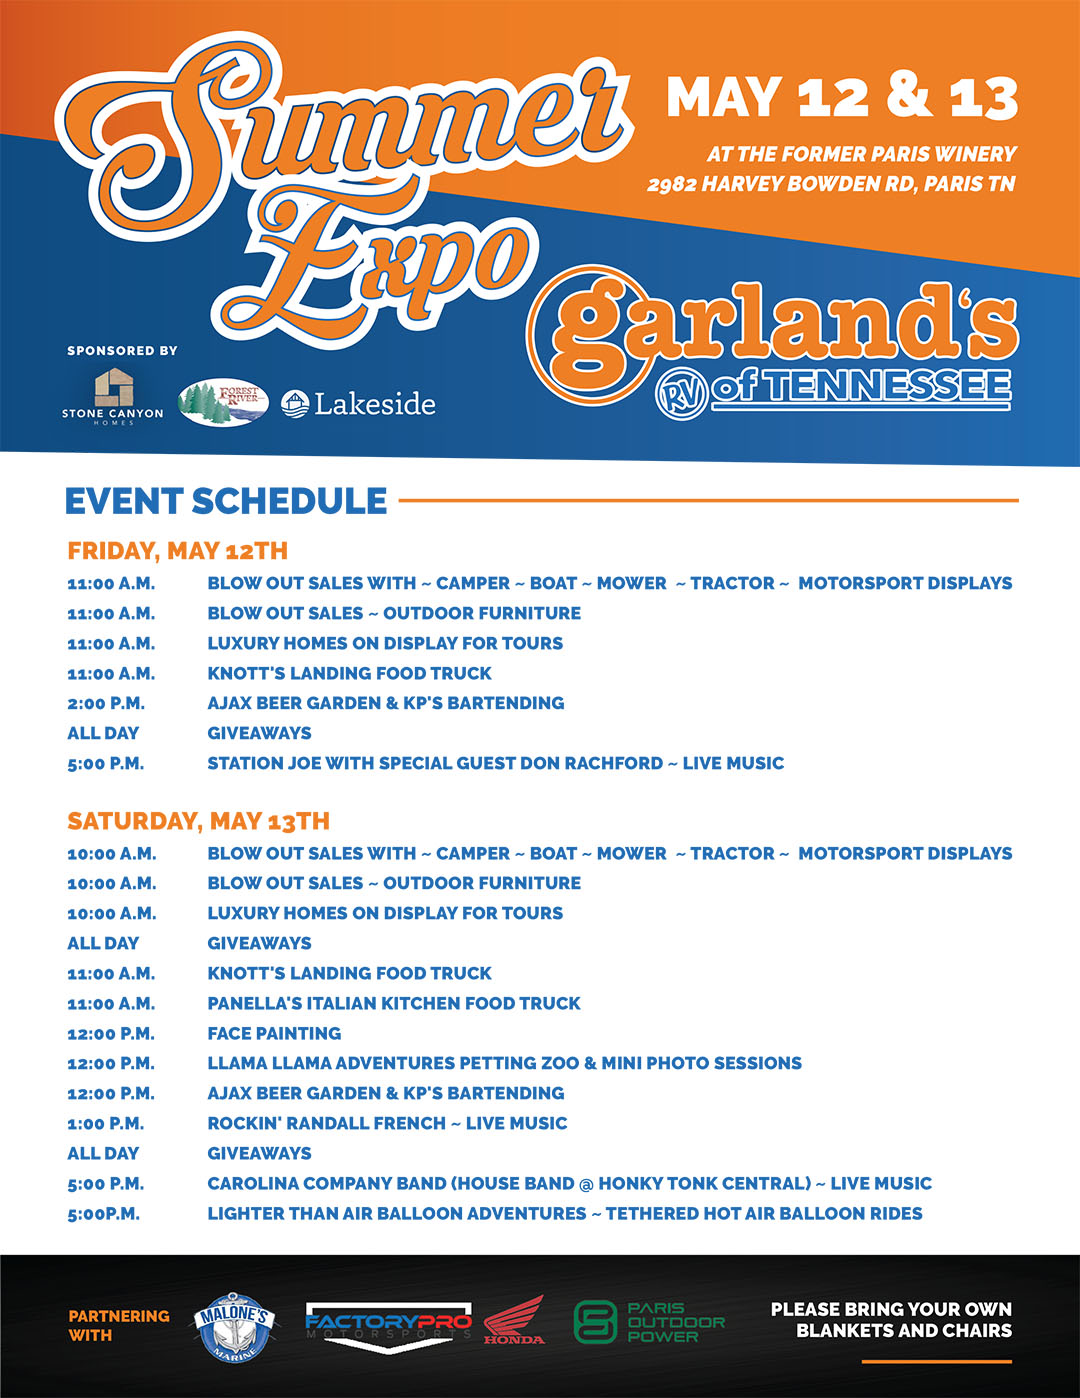 Garlands Summer Expo Schedule May 12 & 13